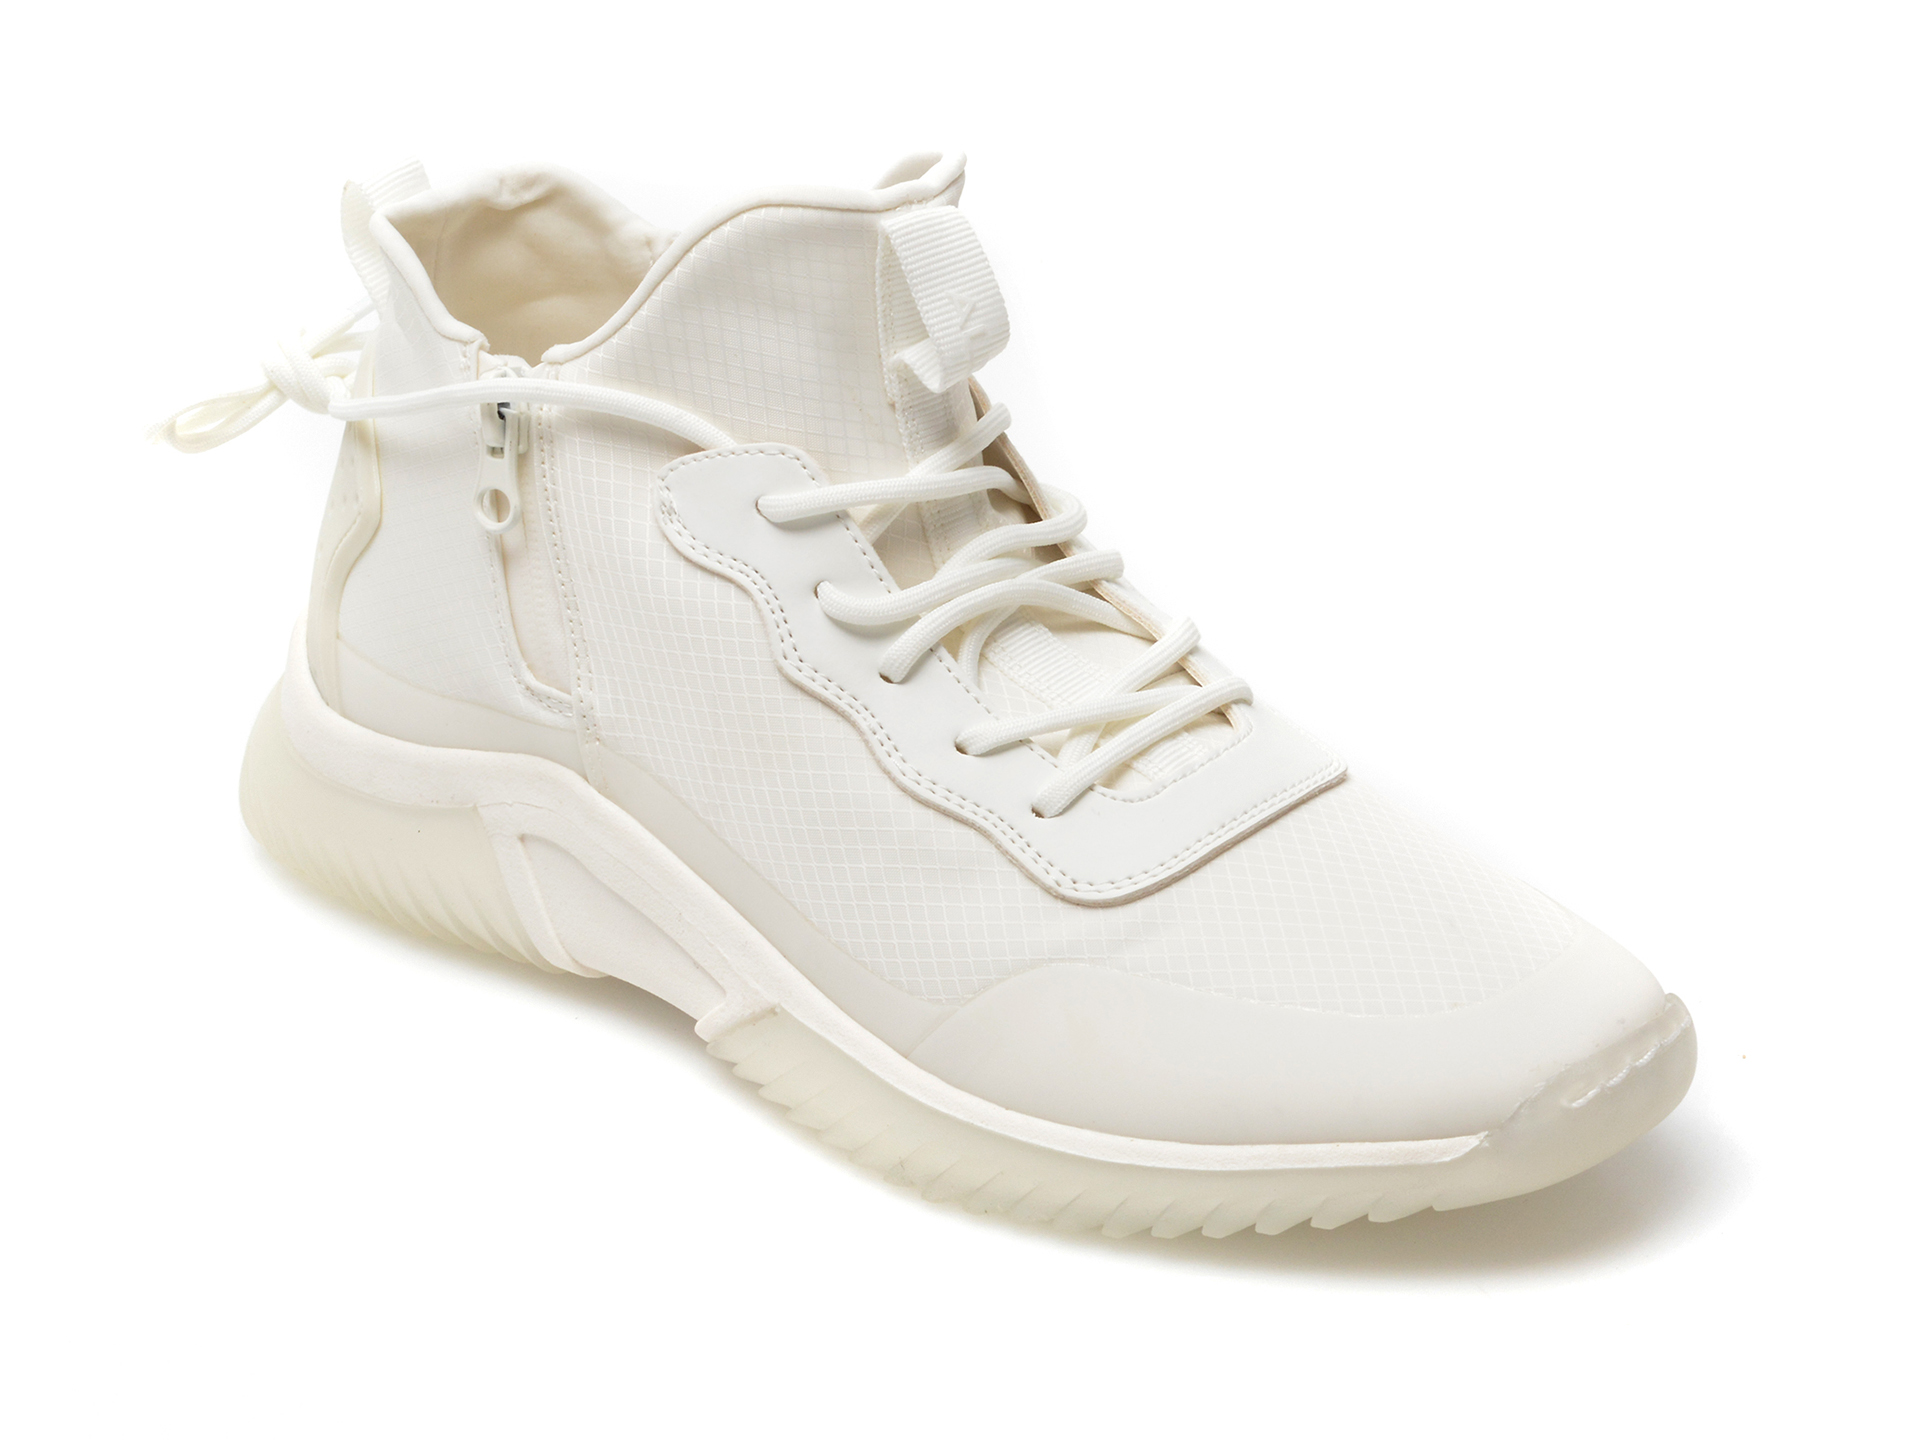 Pantofi sport ALDO albi, Ramsko100, din material textil Aldo Aldo